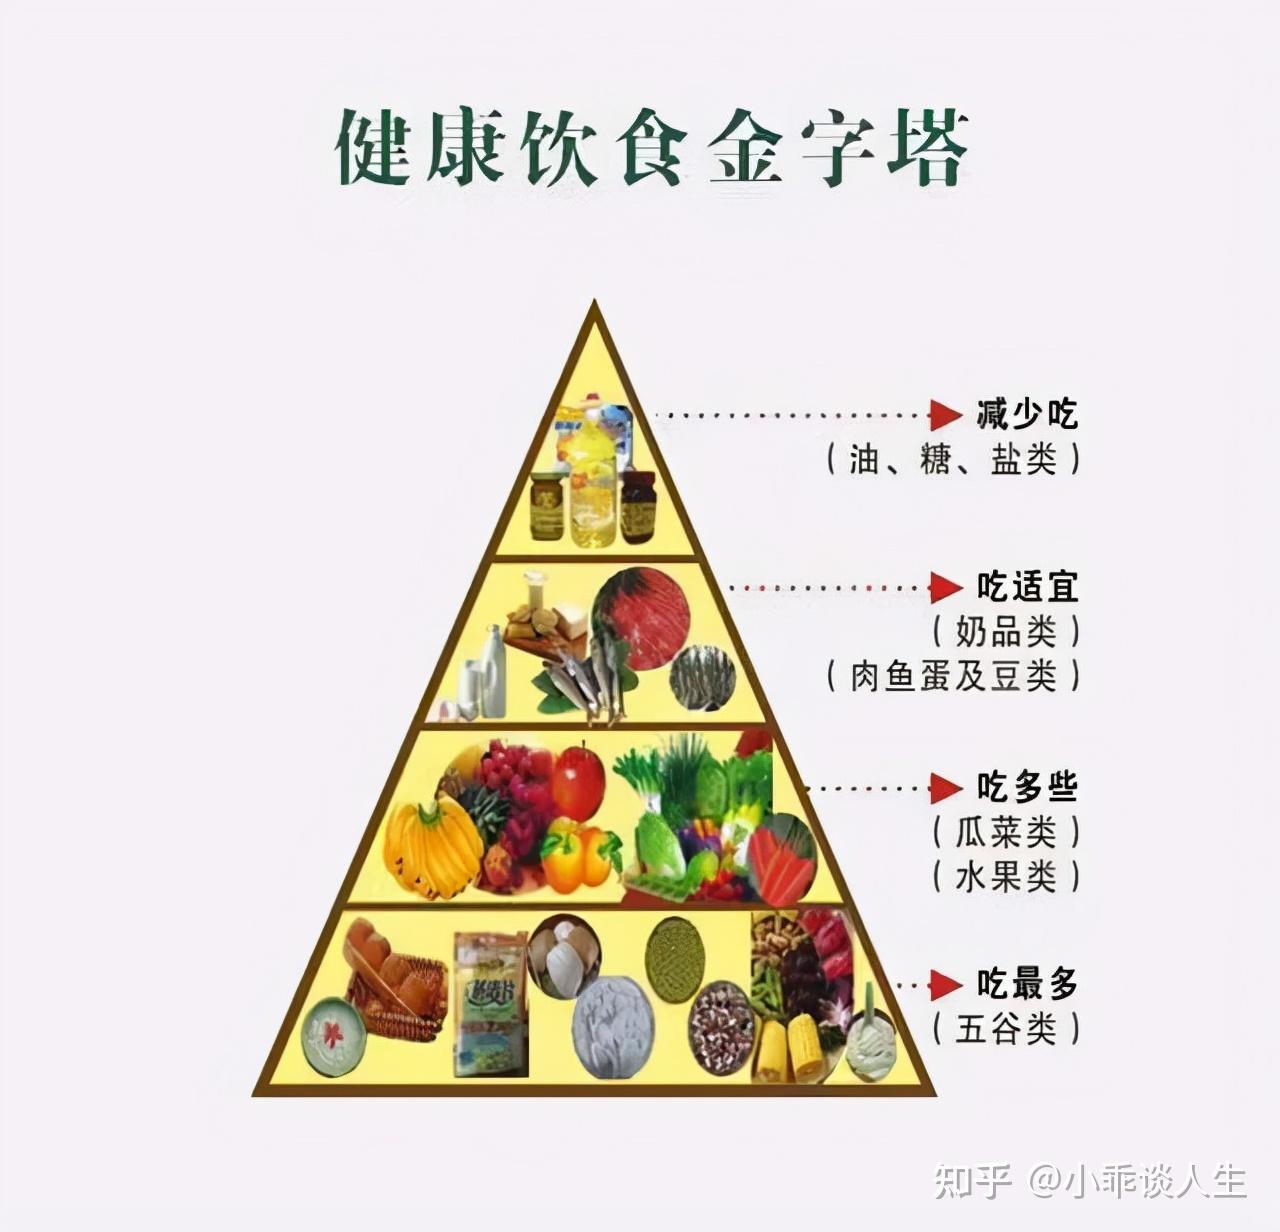 低热量高纤维的食物;绿色:指蔬菜,占1/3,不低于5种;粉色:指蛋白质食物